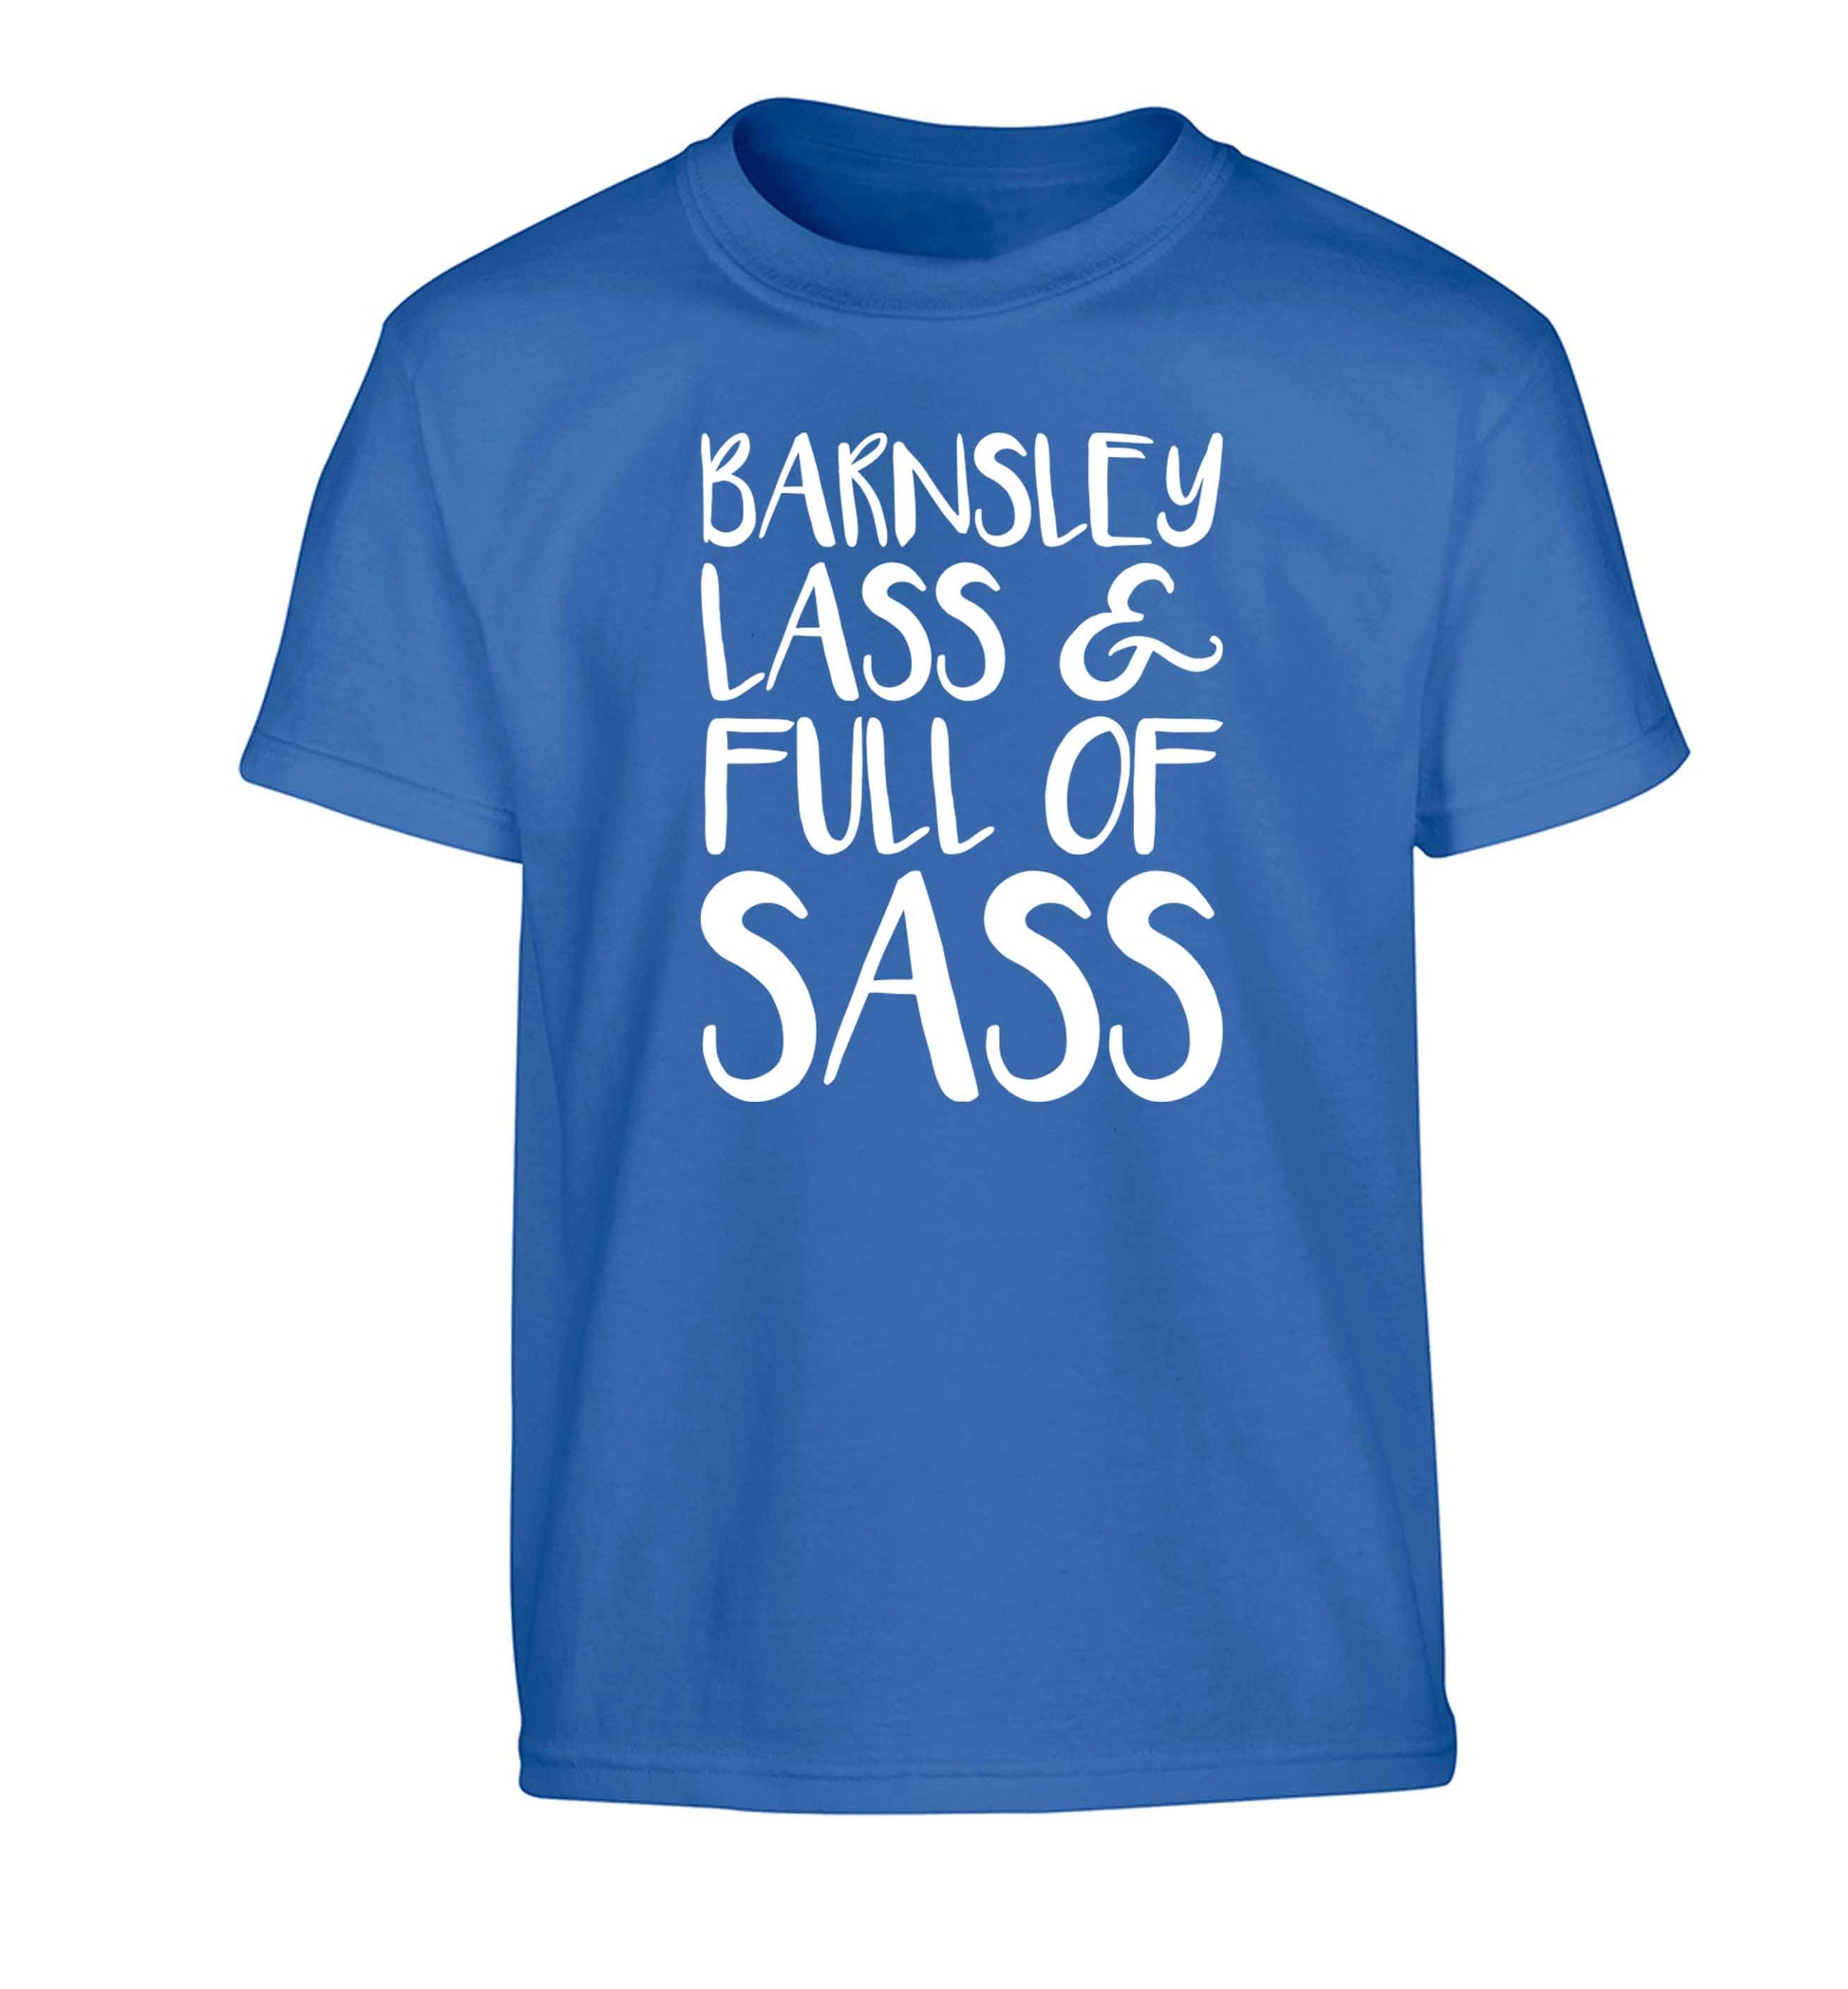 Barnsley lass and full of sass Children's blue Tshirt 12-13 Years